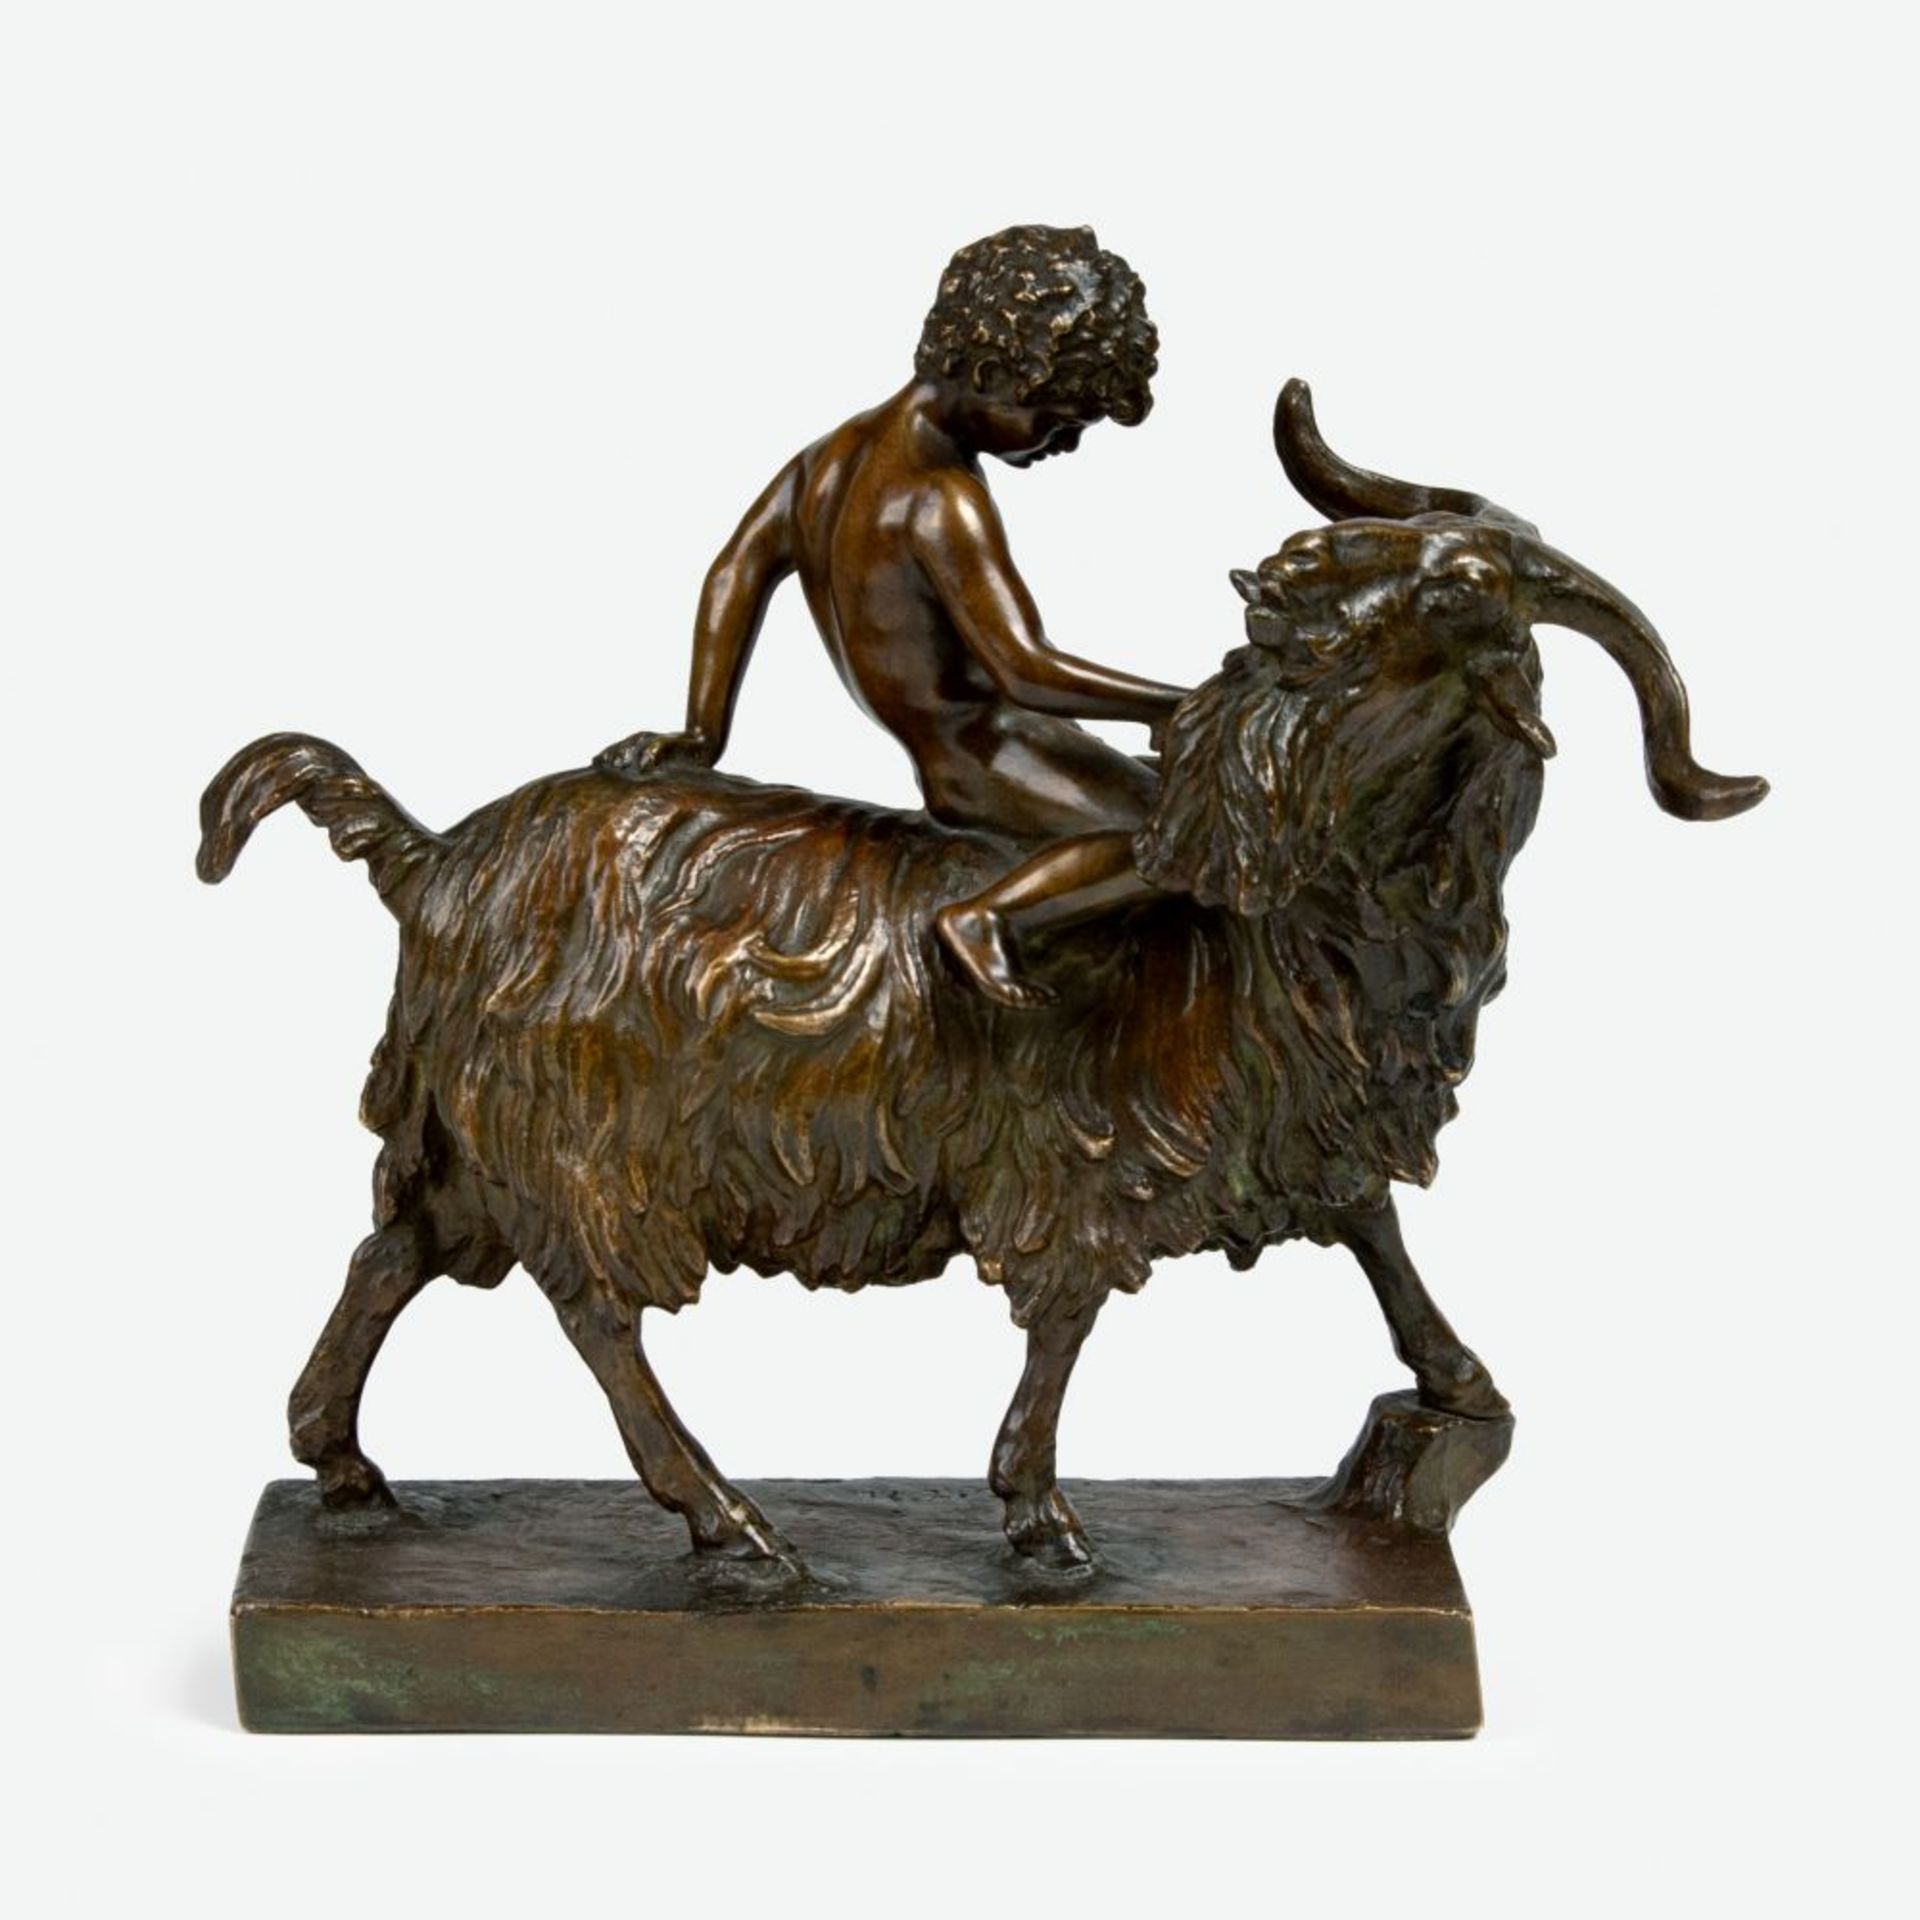 Saaby, August Wilhelm (Aarhus 1823 - Kopenhagen 1916). Boy on a Billy Goat.